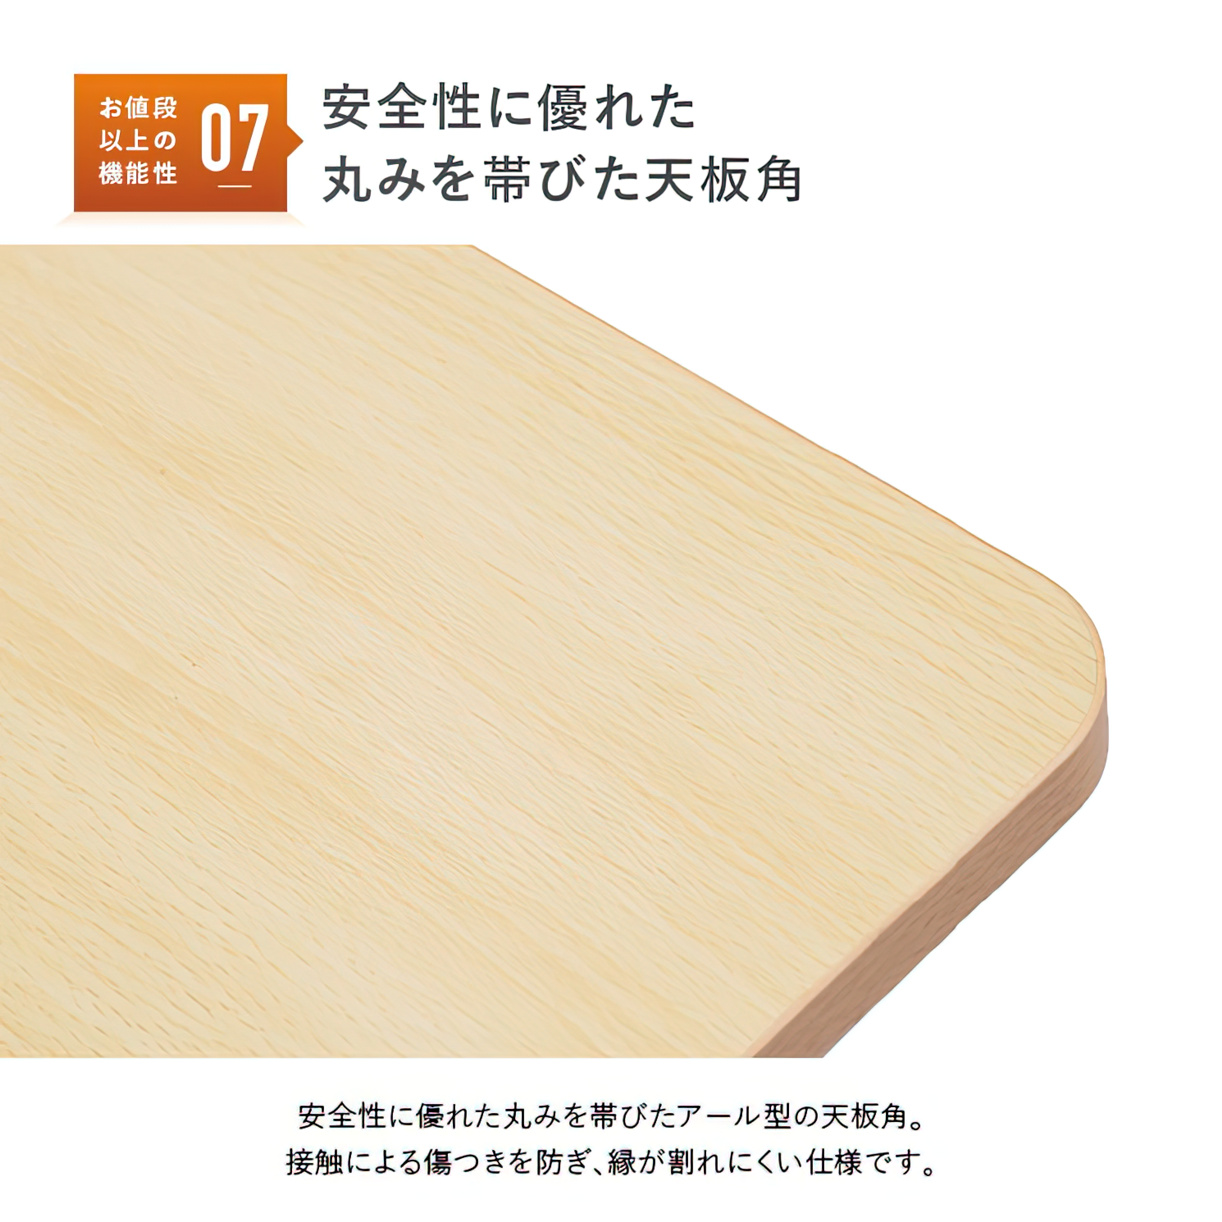 直送品)TOKIO 天板跳上式スタックテーブル(パネルなし) 1800×450mm 天板色:ニューグレー HSN-1845-NG  オフィス、会議テーブル